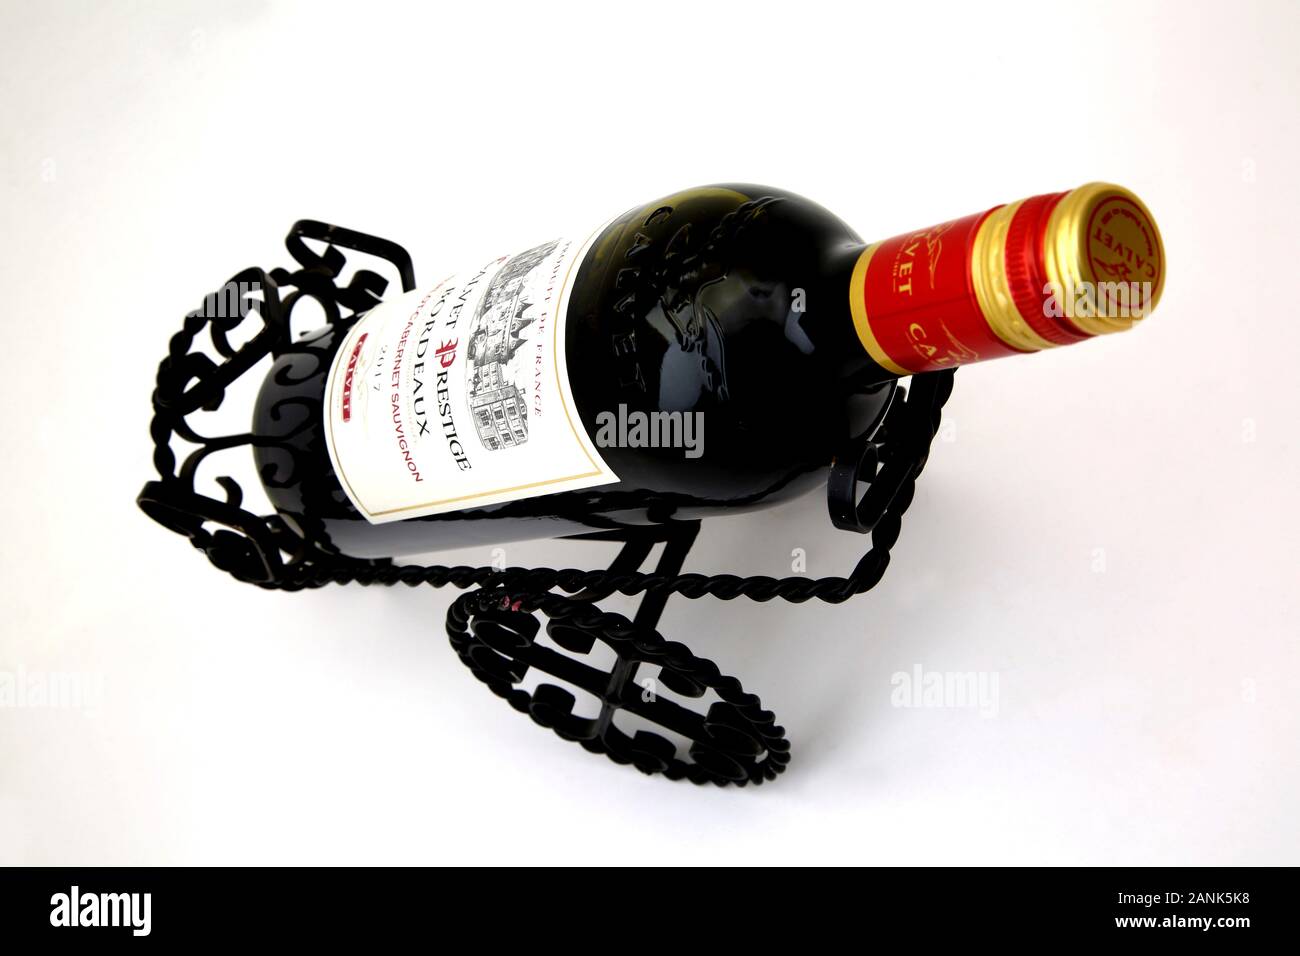 Porte-bouteille de vin en fonte et une bouteille de Cabernet Sauvignon Prestige Bordeaux Calvet Banque D'Images